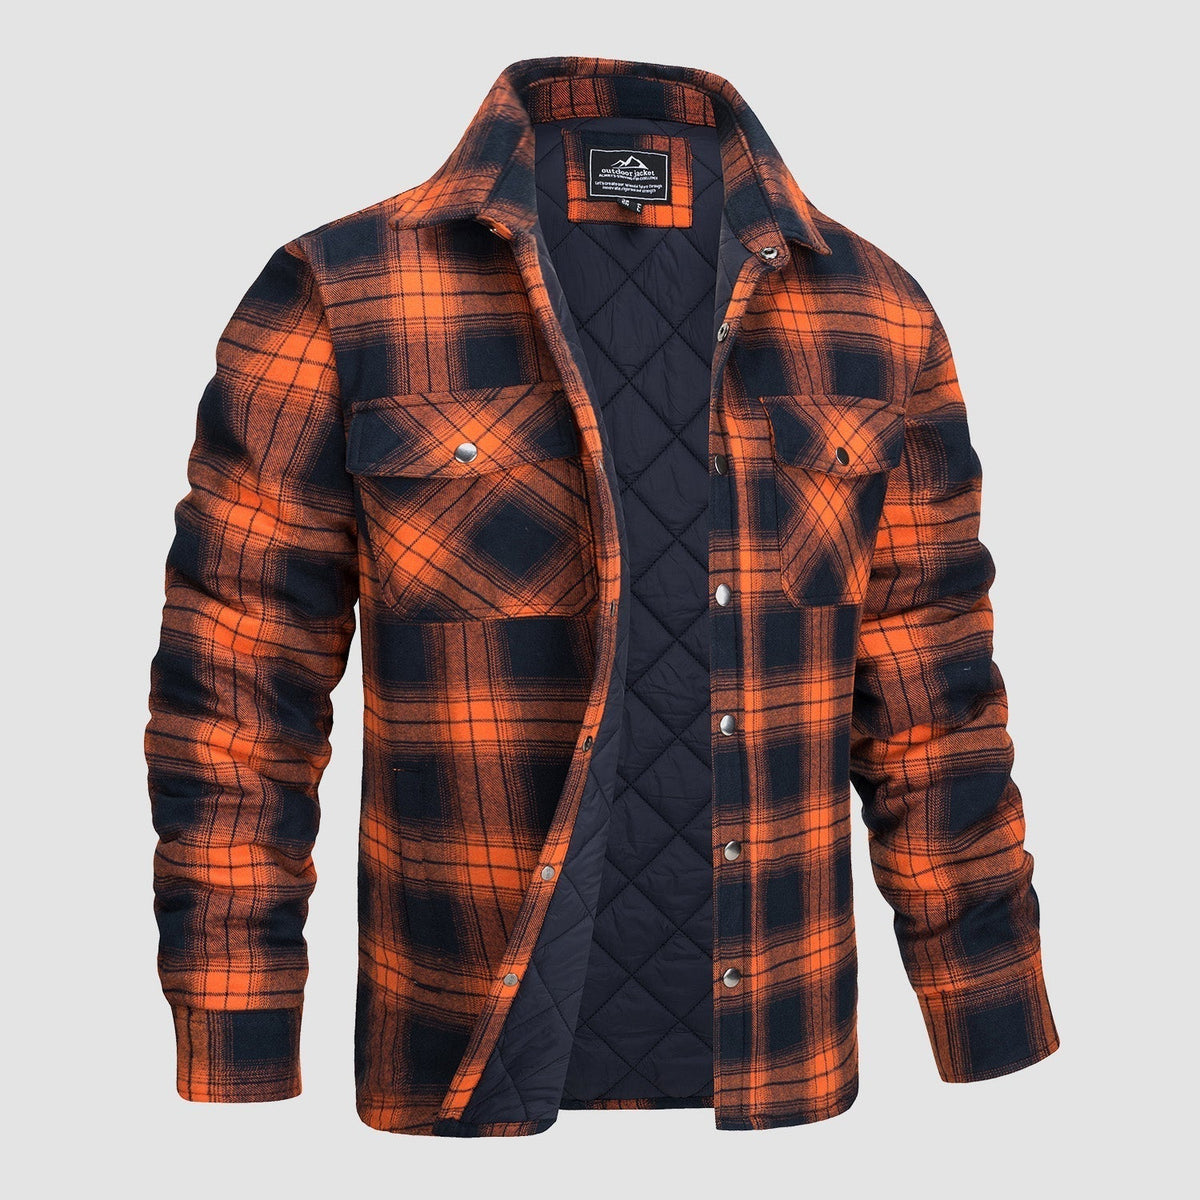 Daniel - Stilvolle Jacke - - GlowAmbe™ | Das kabellose und wiederaufladbare Stimmungslicht - € - casual Chequered Heren jacket men MÄNNER Pullover & Jacken top Tops - Concept Frankfurt